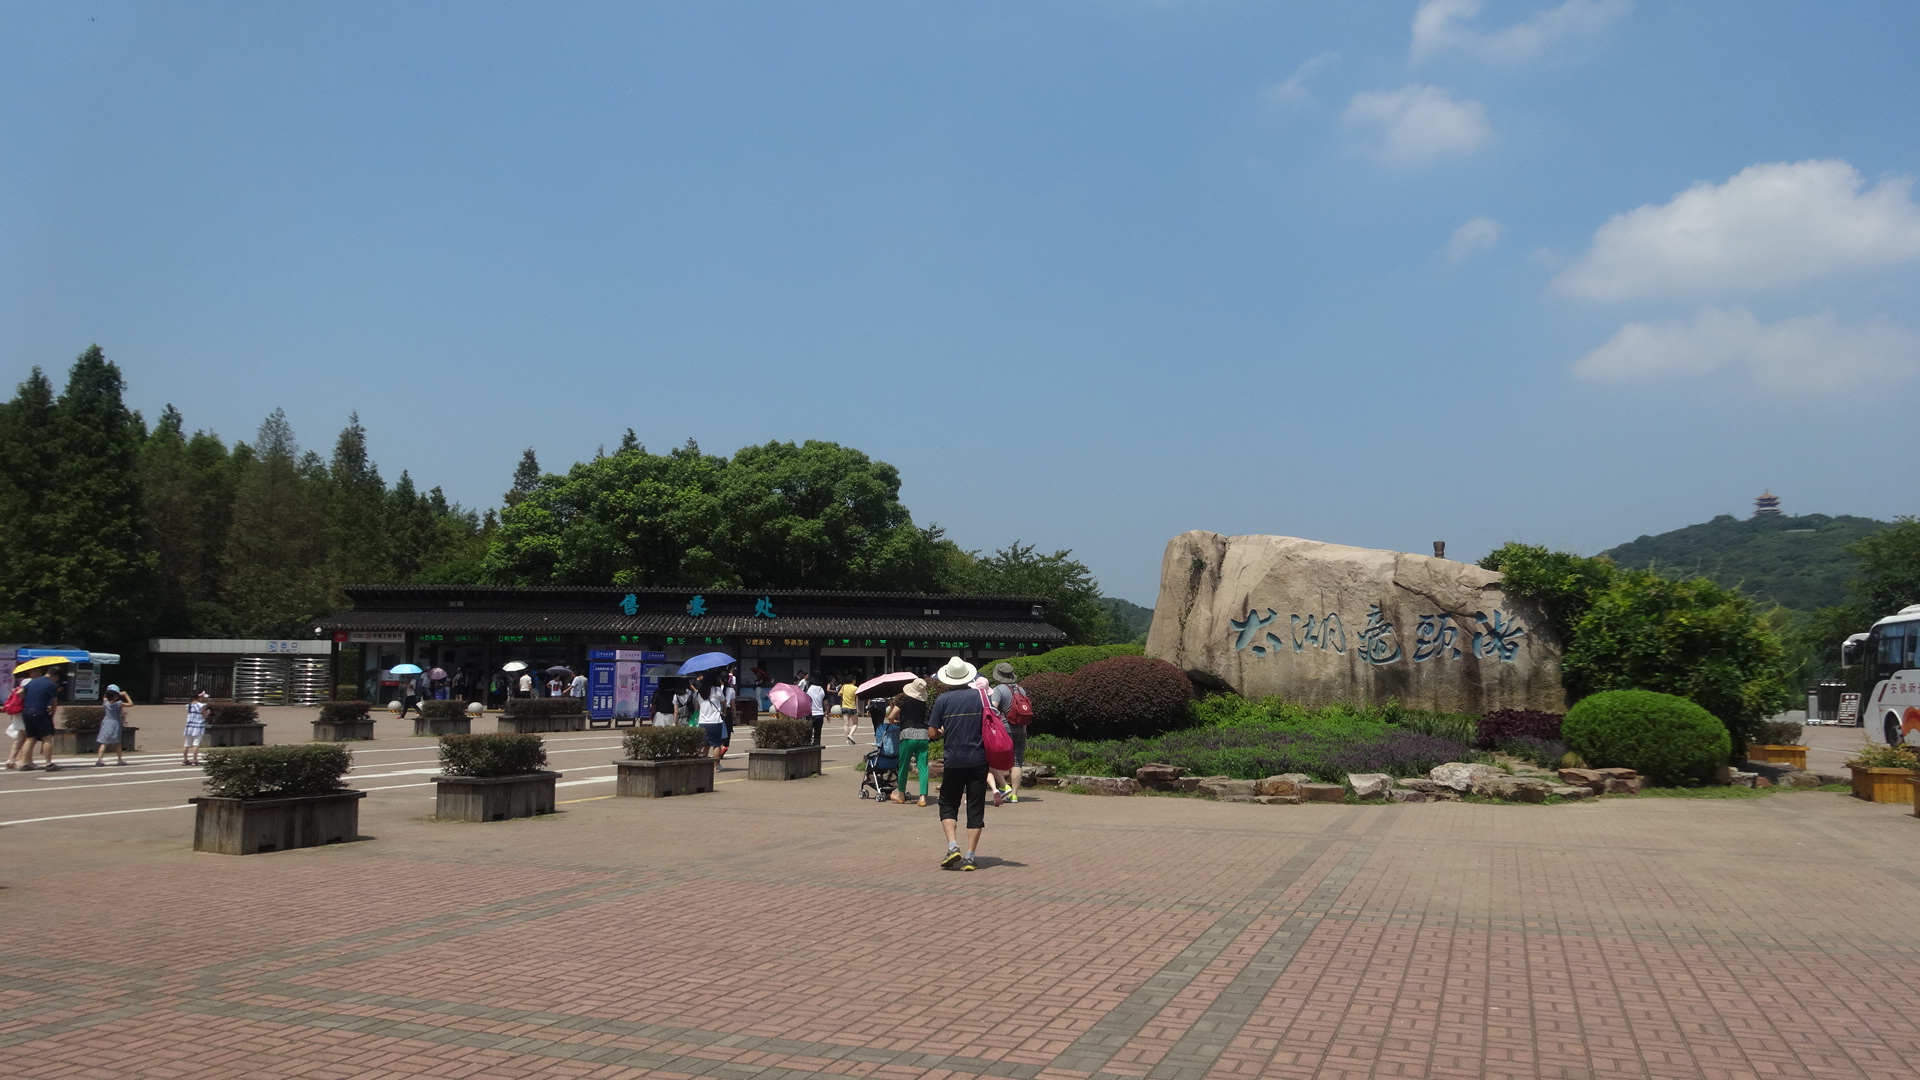 無錫太湖鼋头渚公园